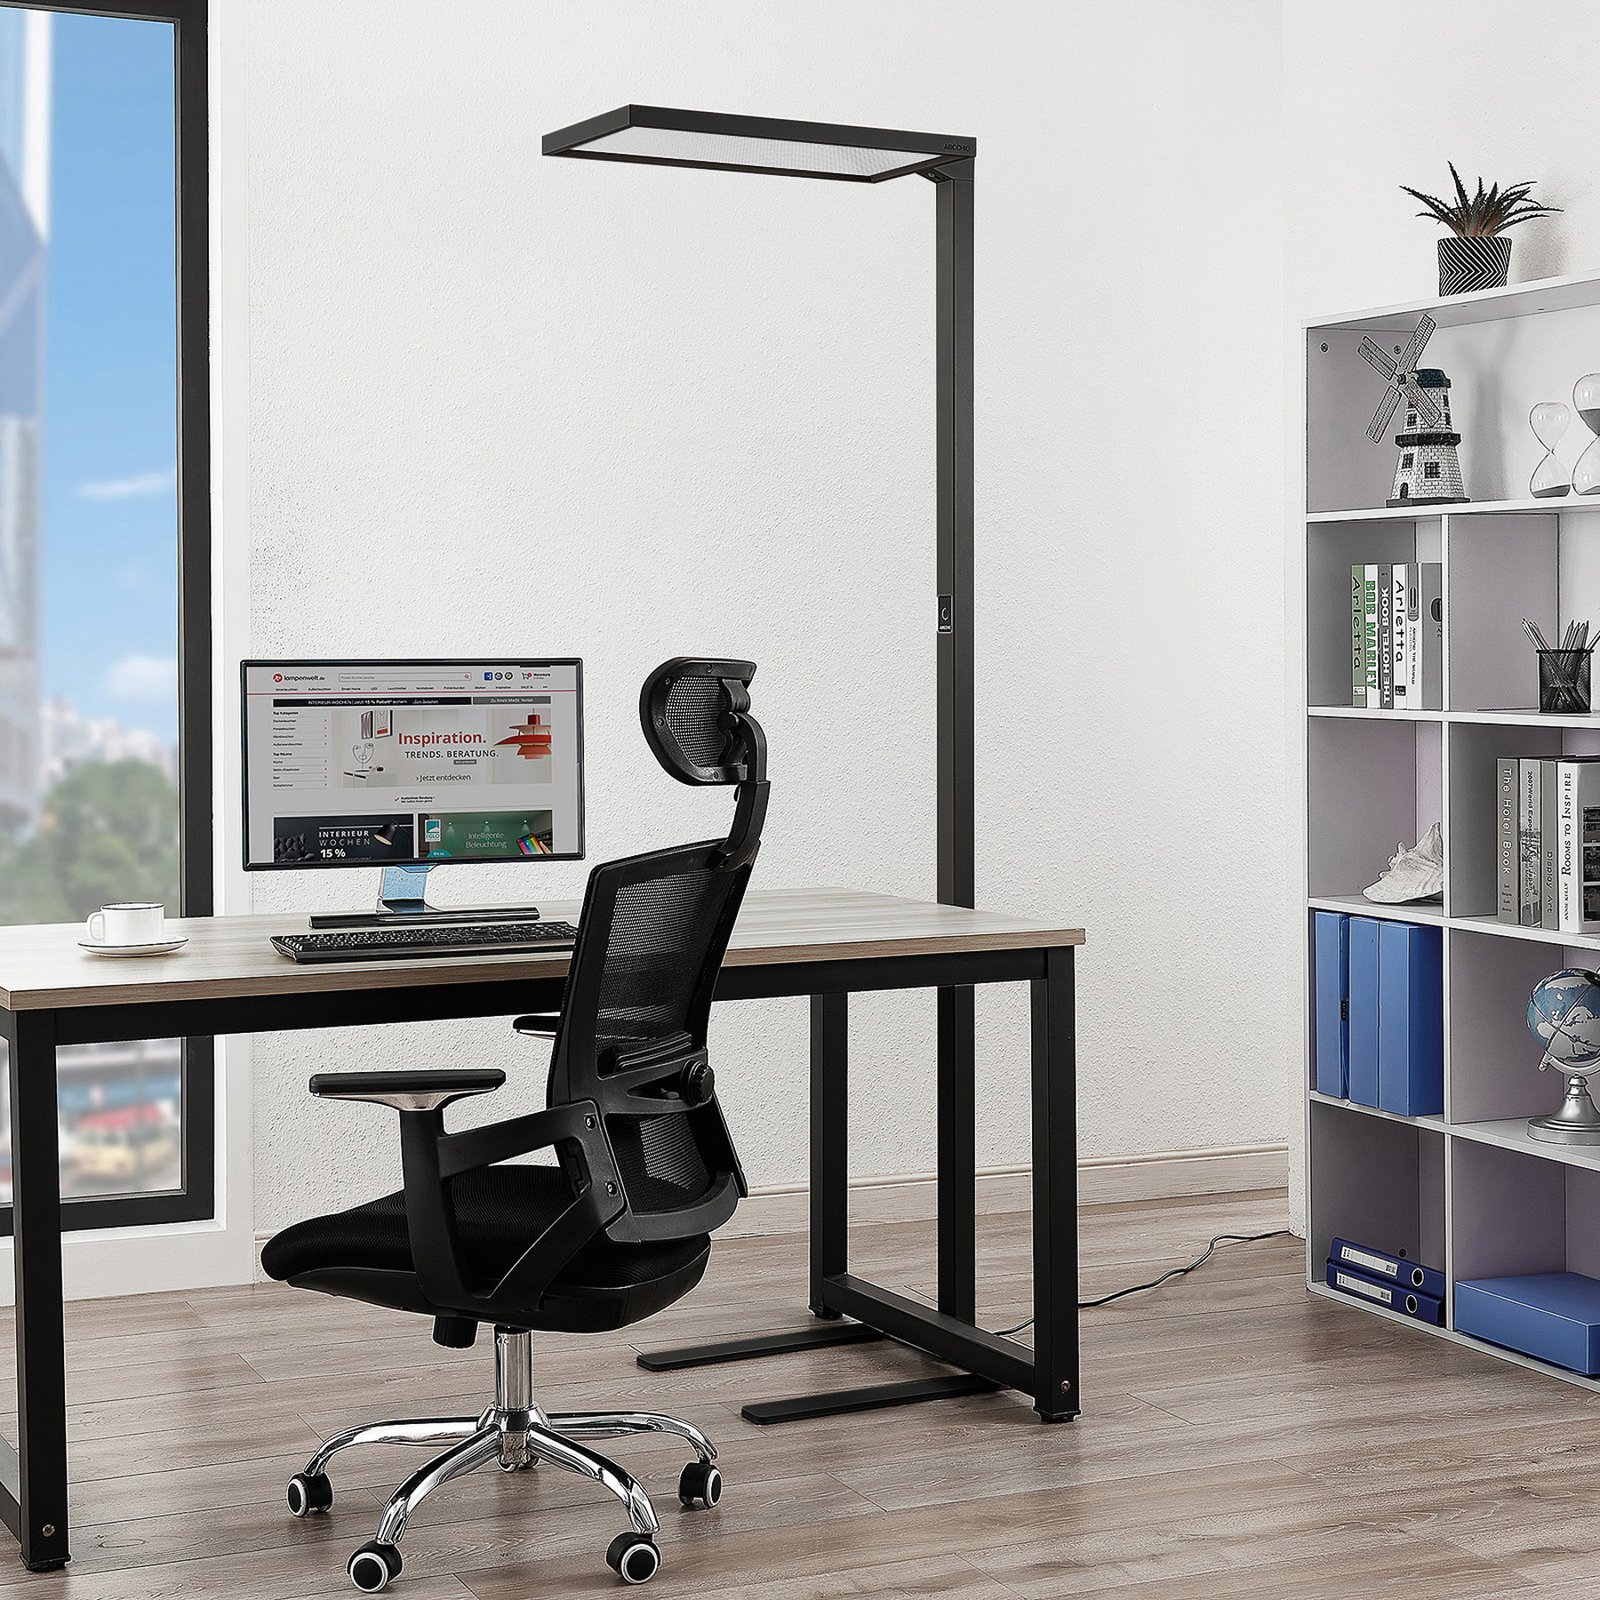 Arcchio Nelus LED kantoor vloerlamp, sensor zwart